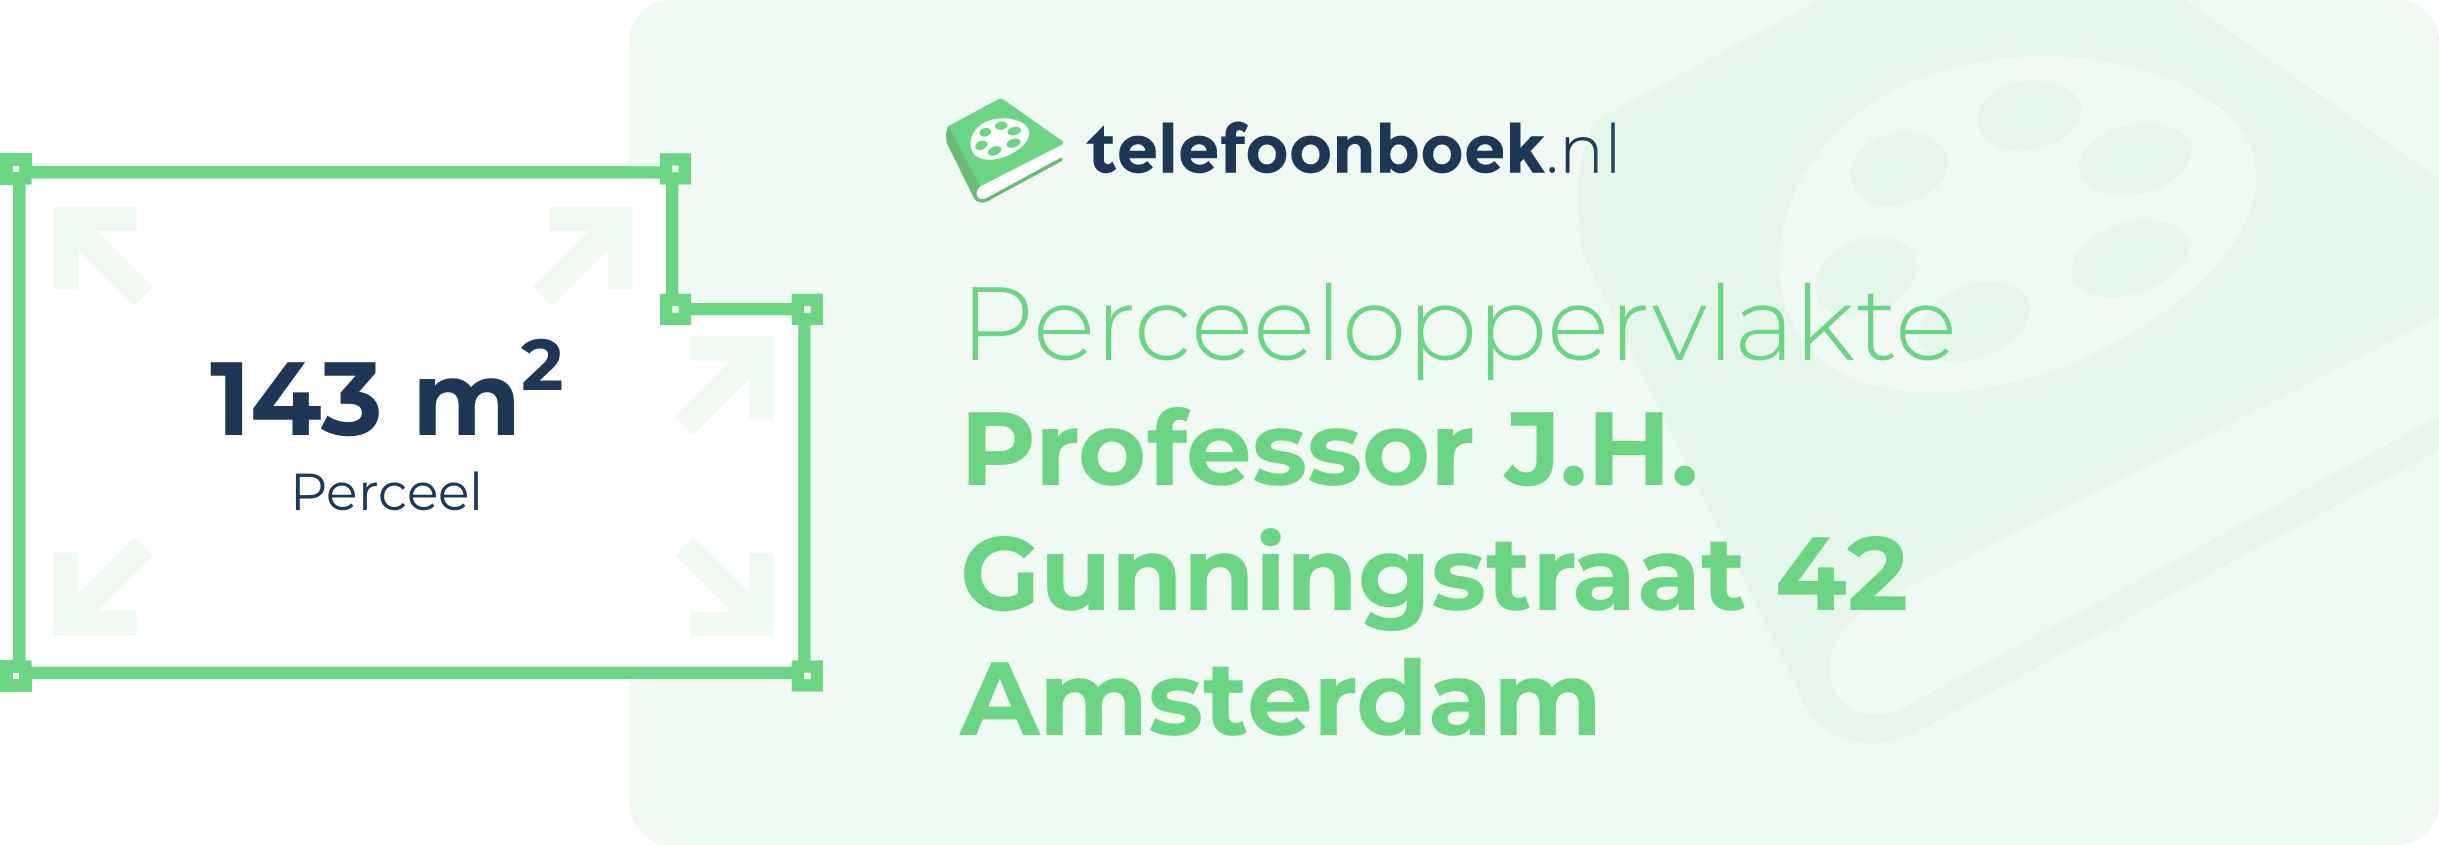 Perceeloppervlakte Professor J.H. Gunningstraat 42 Amsterdam